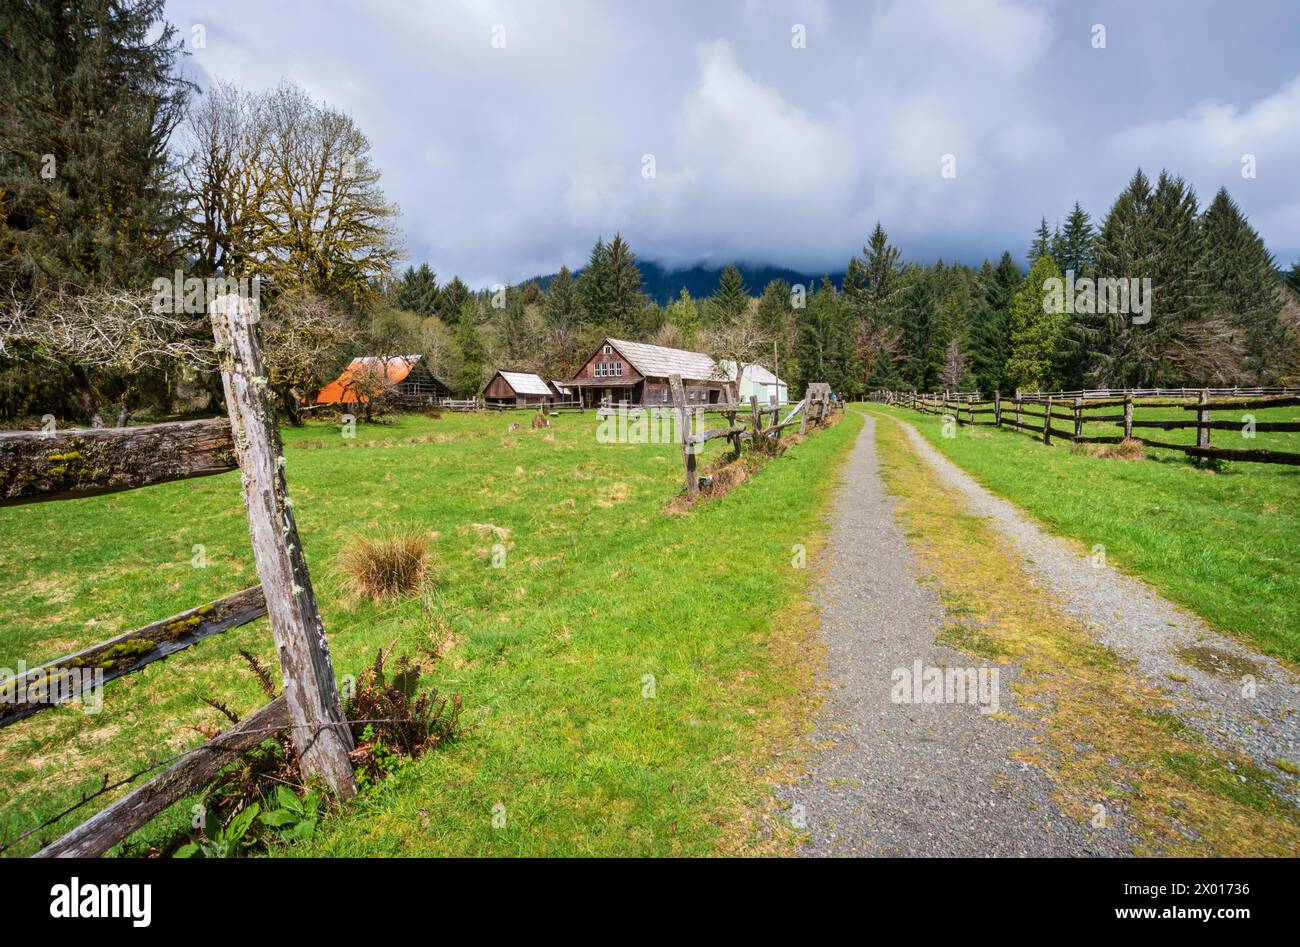 La storica fattoria Kestner Homestead nell'area della Quinault Rain Forest dell'Olympic National Park, Washington State, USA Foto Stock